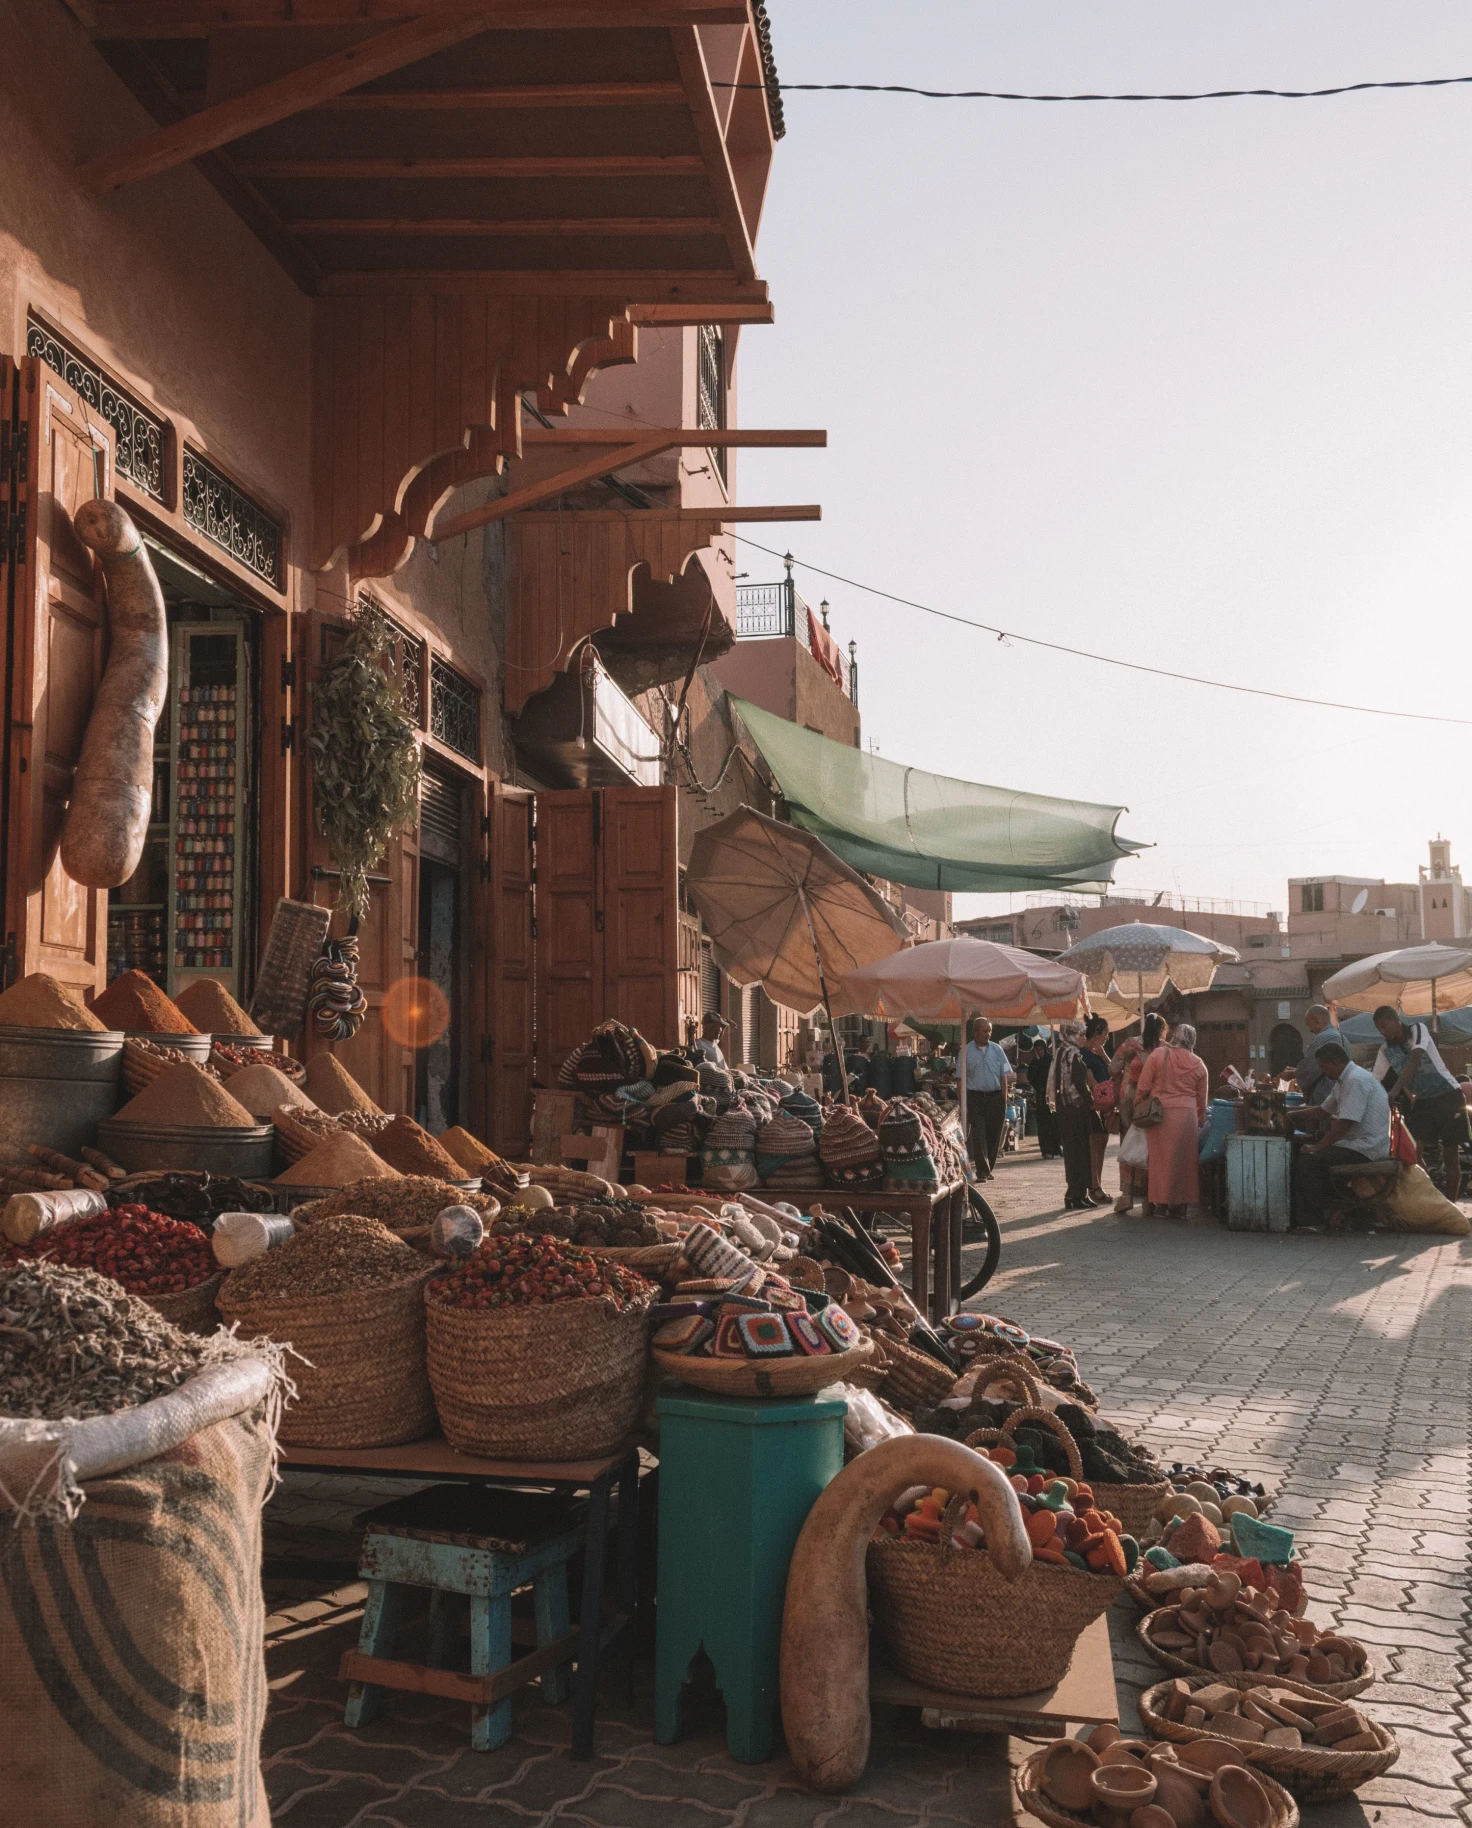 medina market in a dessert city 